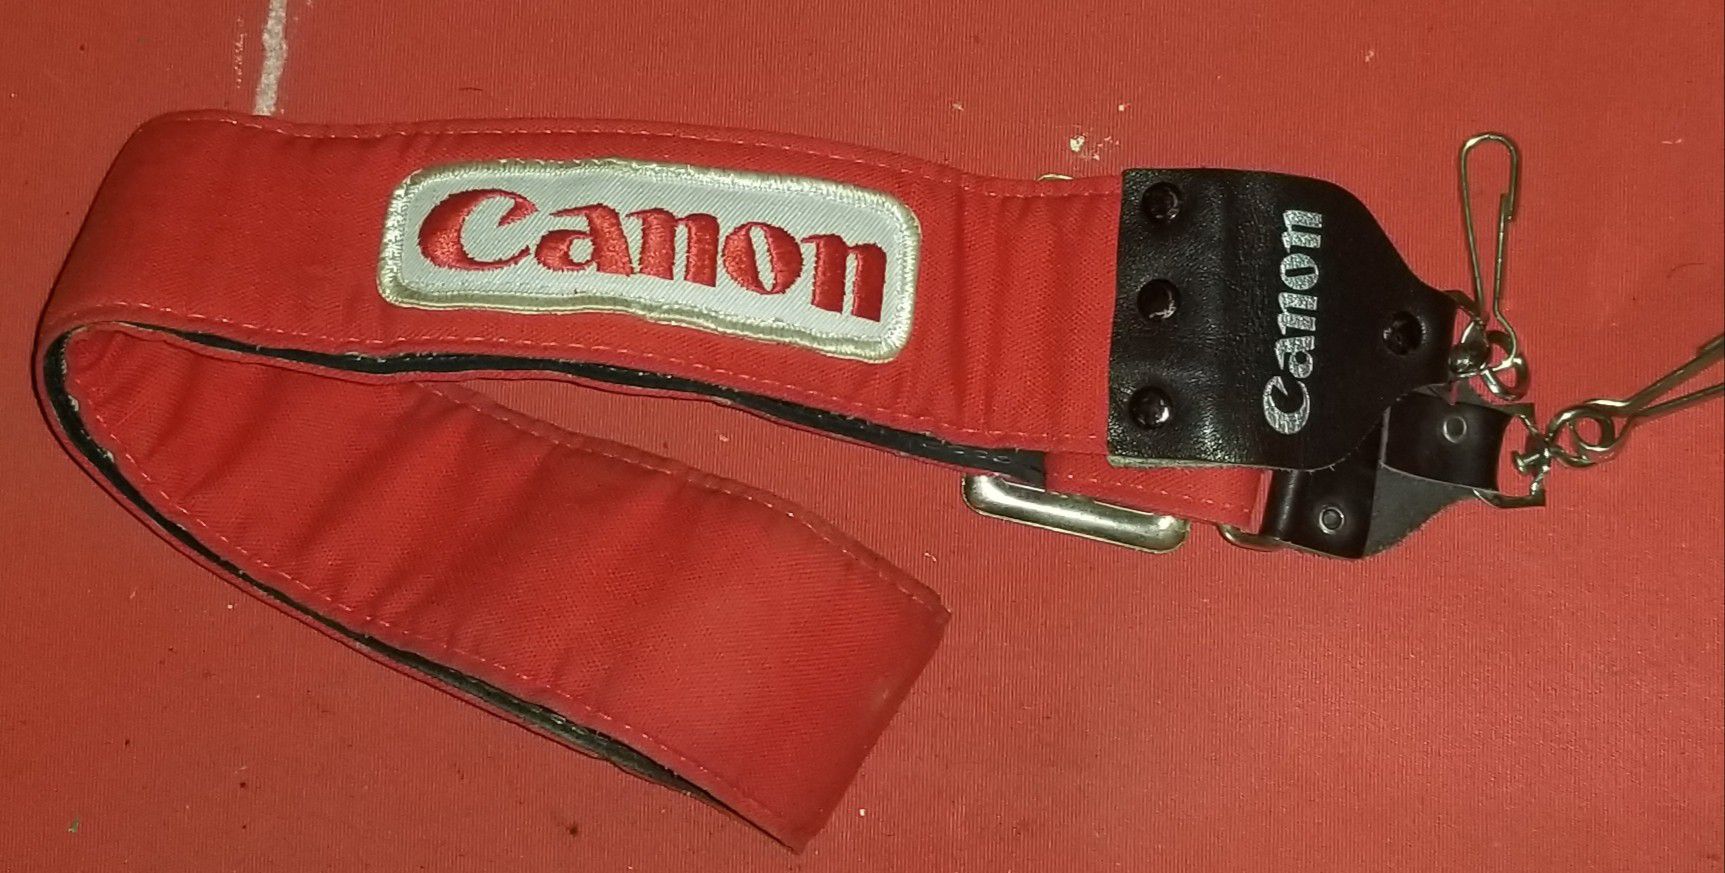 Cannon camera strap